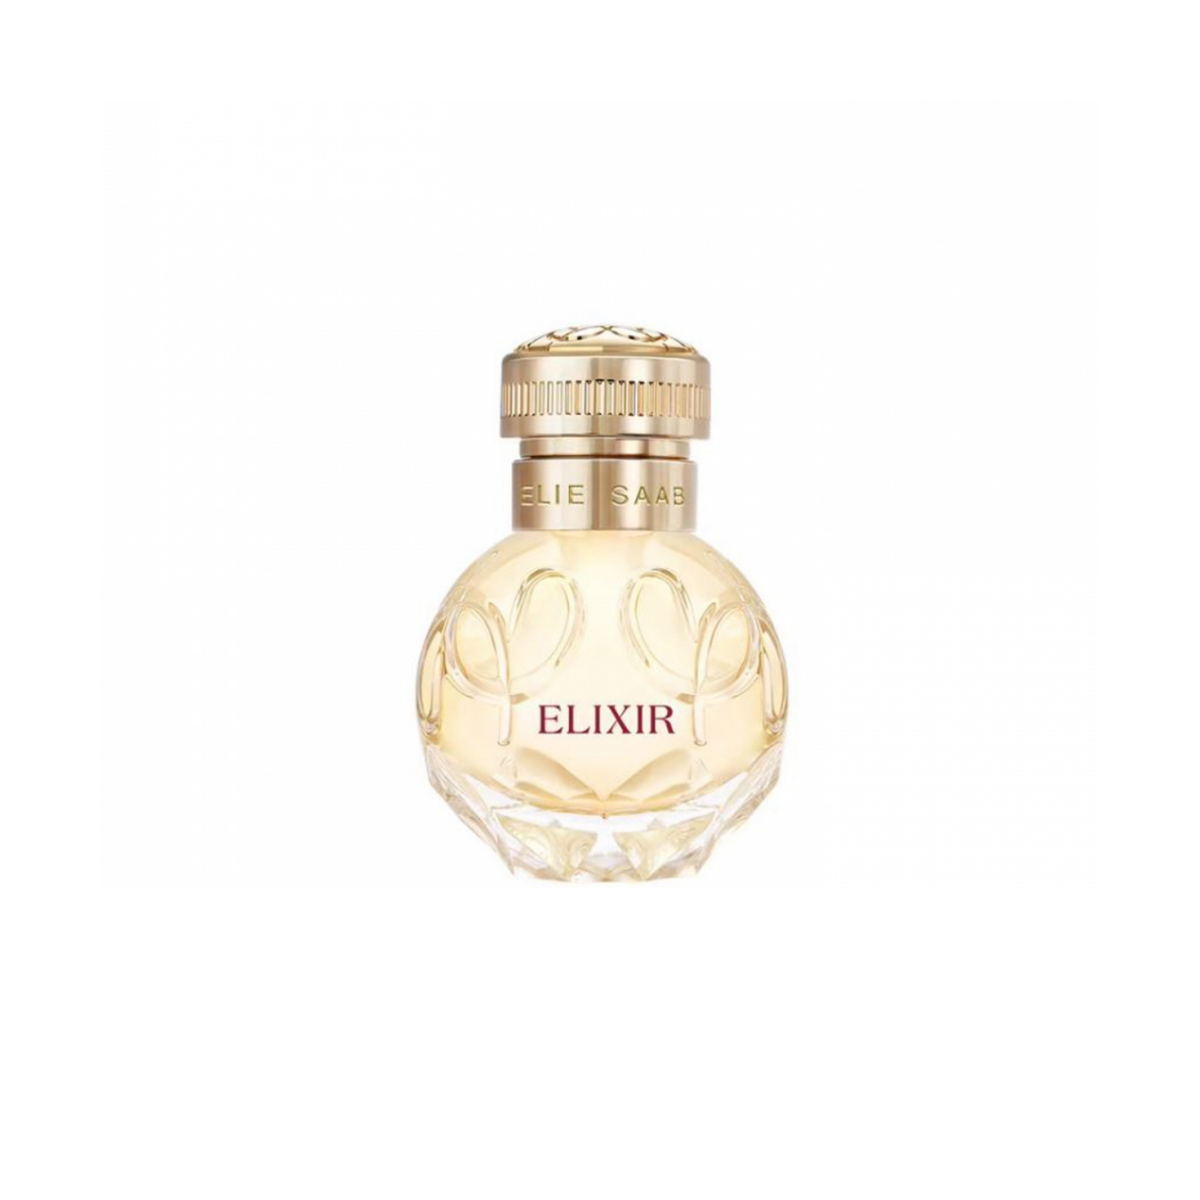 Elixir Eau de Parfum ELIE & SAAB | Parfumerie Burdin